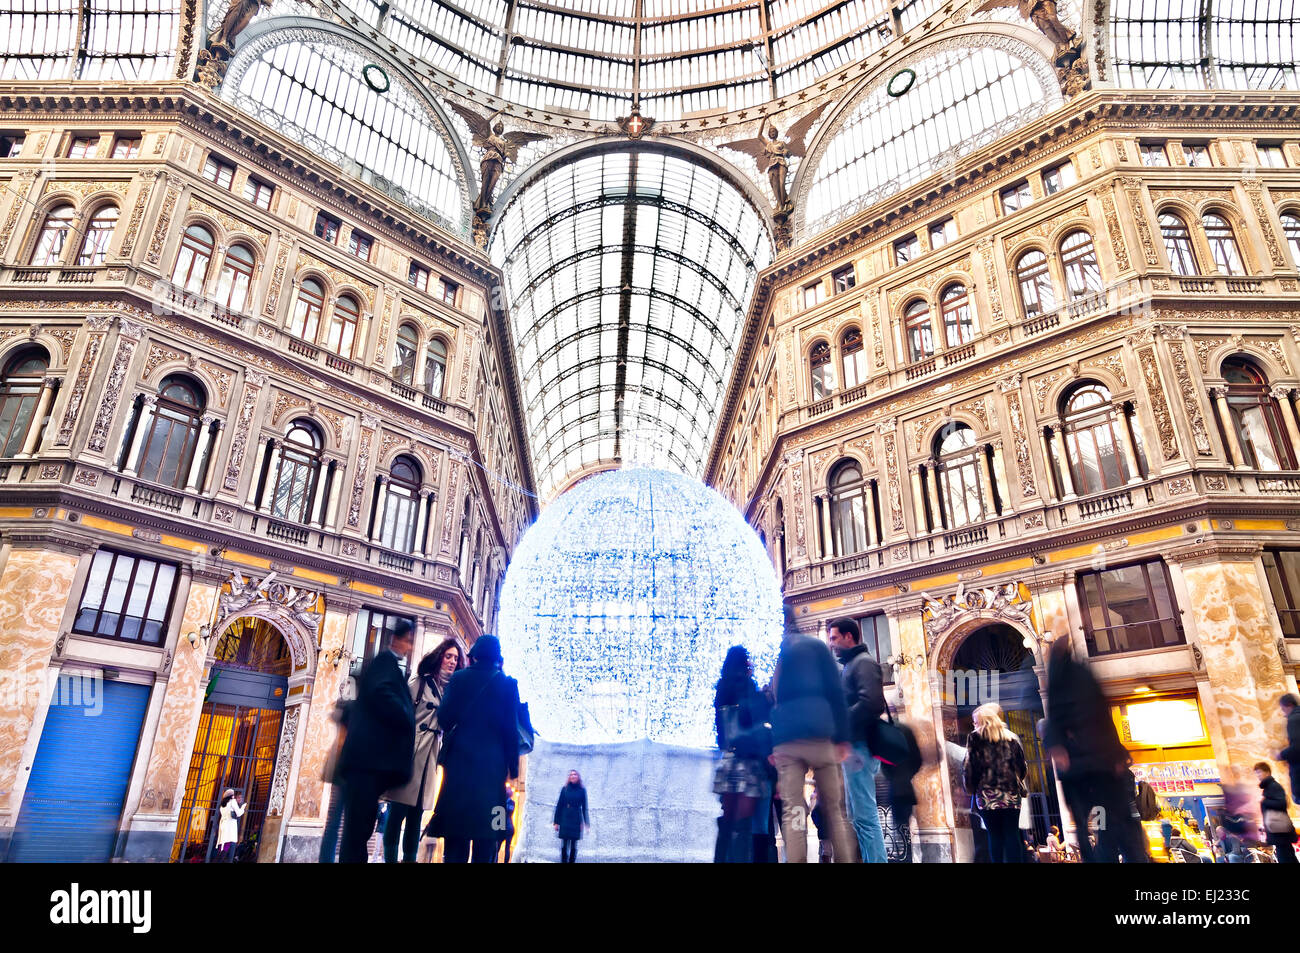 Naples, Italie - 1 janvier 2014 : la vue quotidienne de touristes et habitants dans les galerie commerçante Galleria Umberto I de Naples, Italie. Banque D'Images